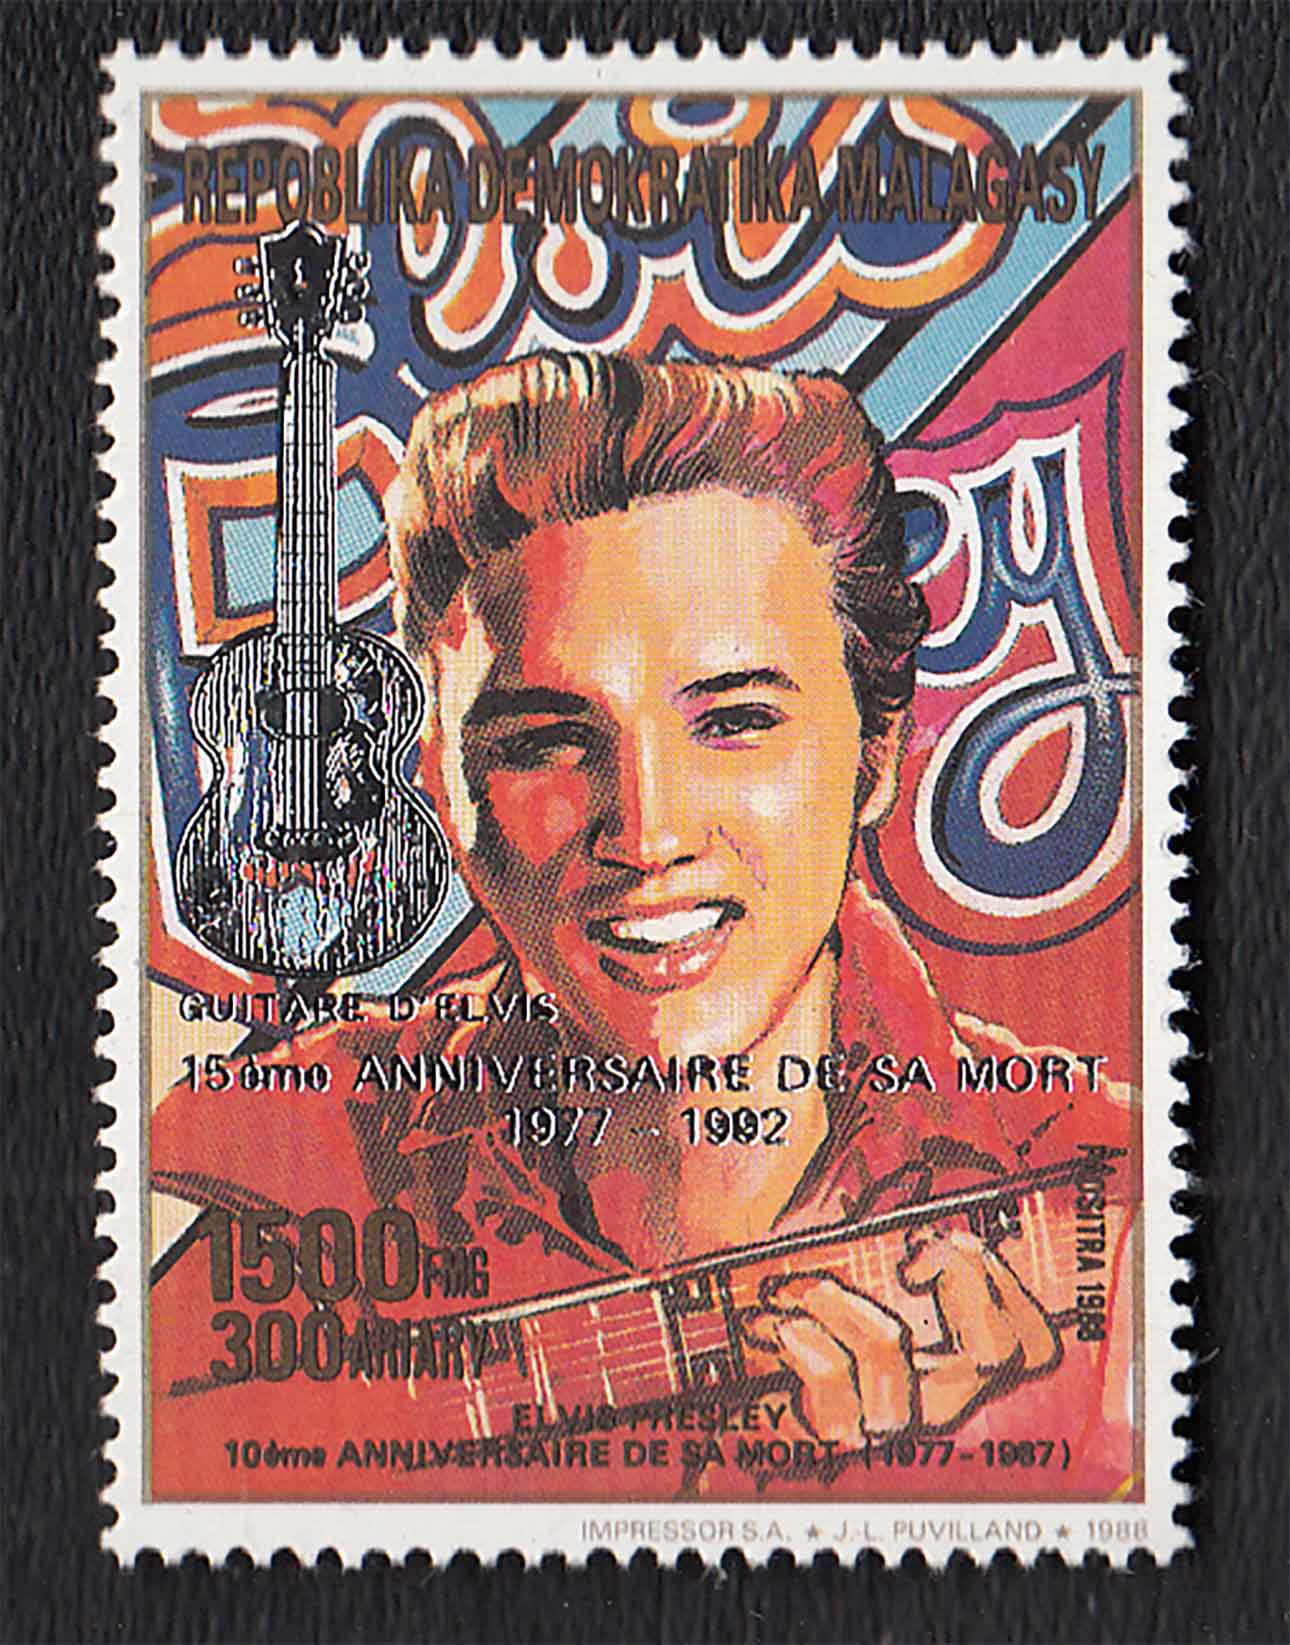 1988 - Francobollo commemorativo Elvis Presley Nuovo 15 Anni. della scomparsa